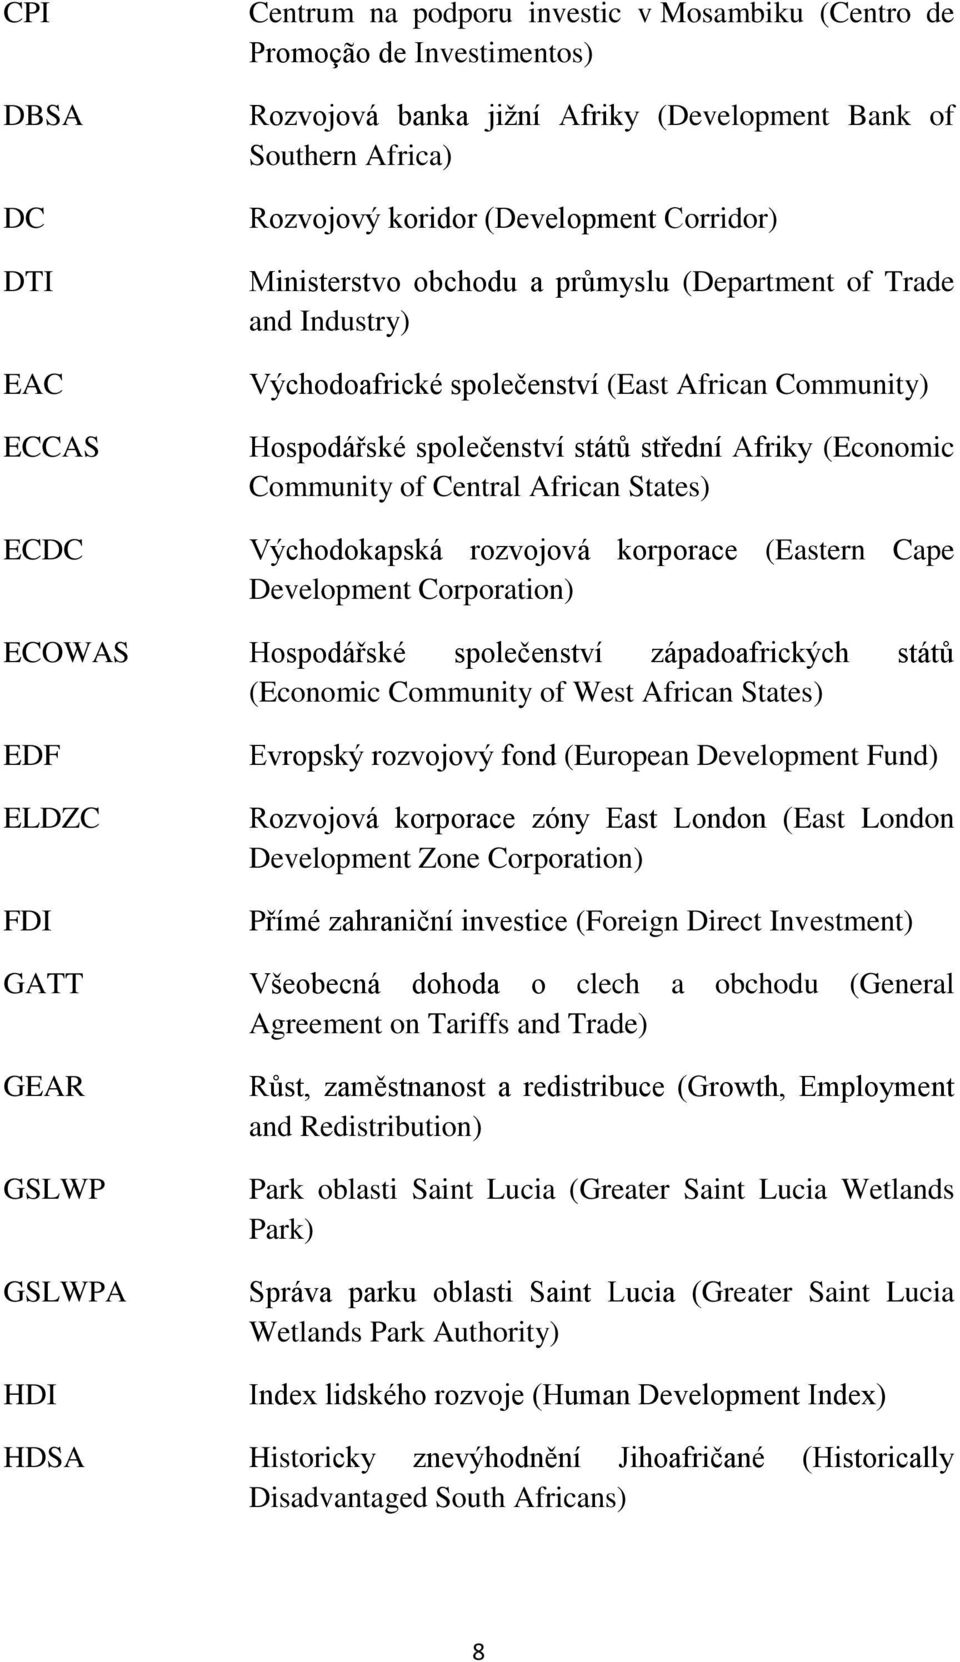 Community of Central African States) Východokapská rozvojová korporace (Eastern Cape Development Corporation) ECOWAS Hospodářské společenství západoafrických států (Economic Community of West African